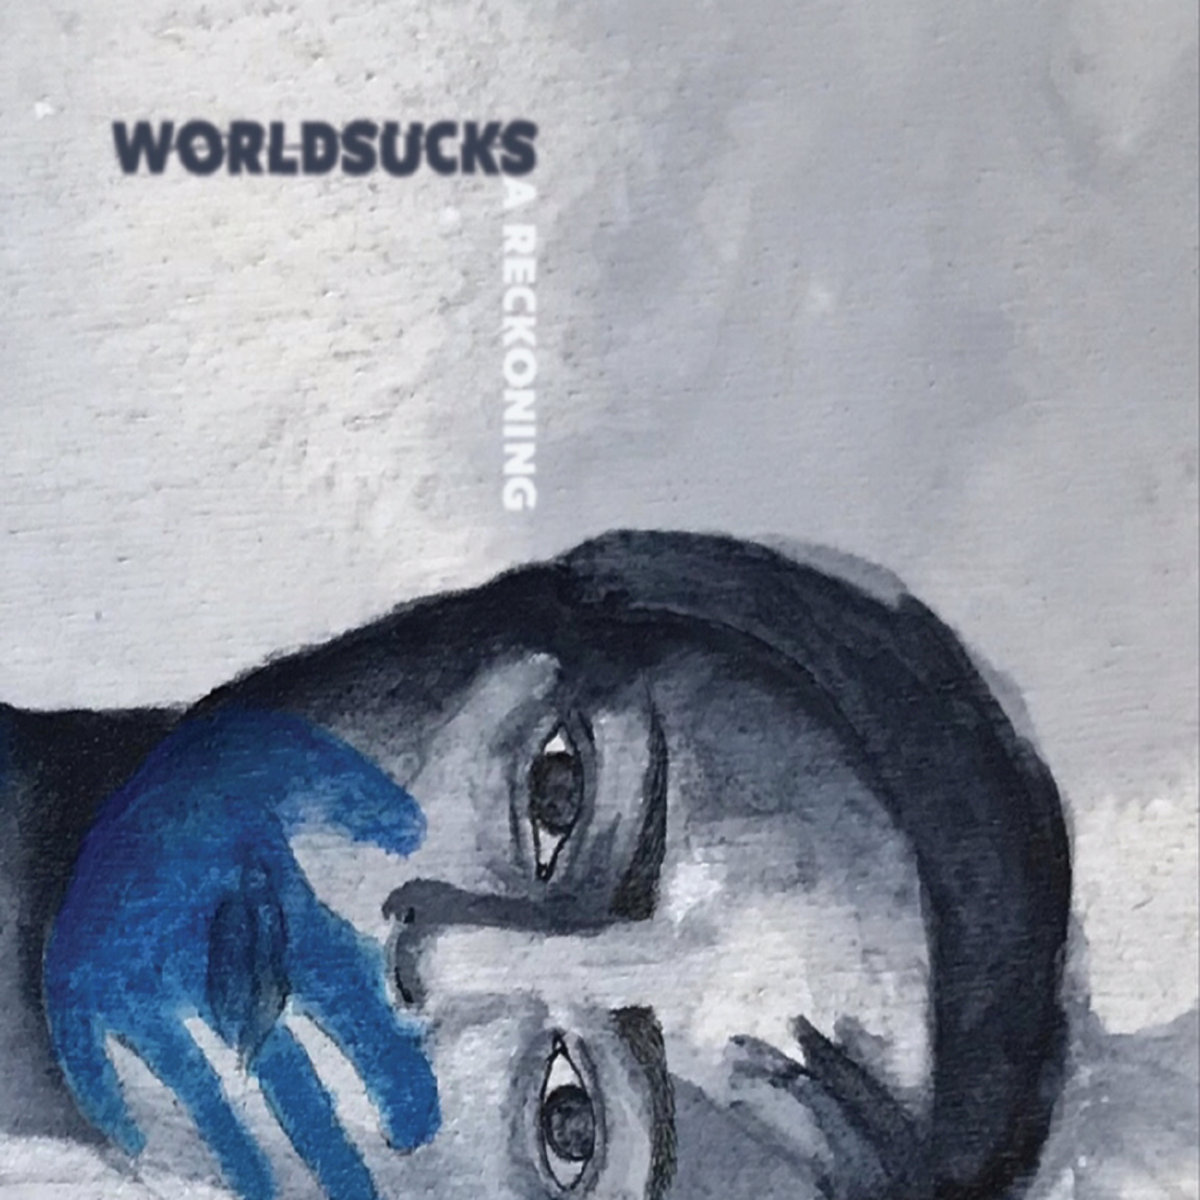 Worldsucks - A Reckoning Artwork